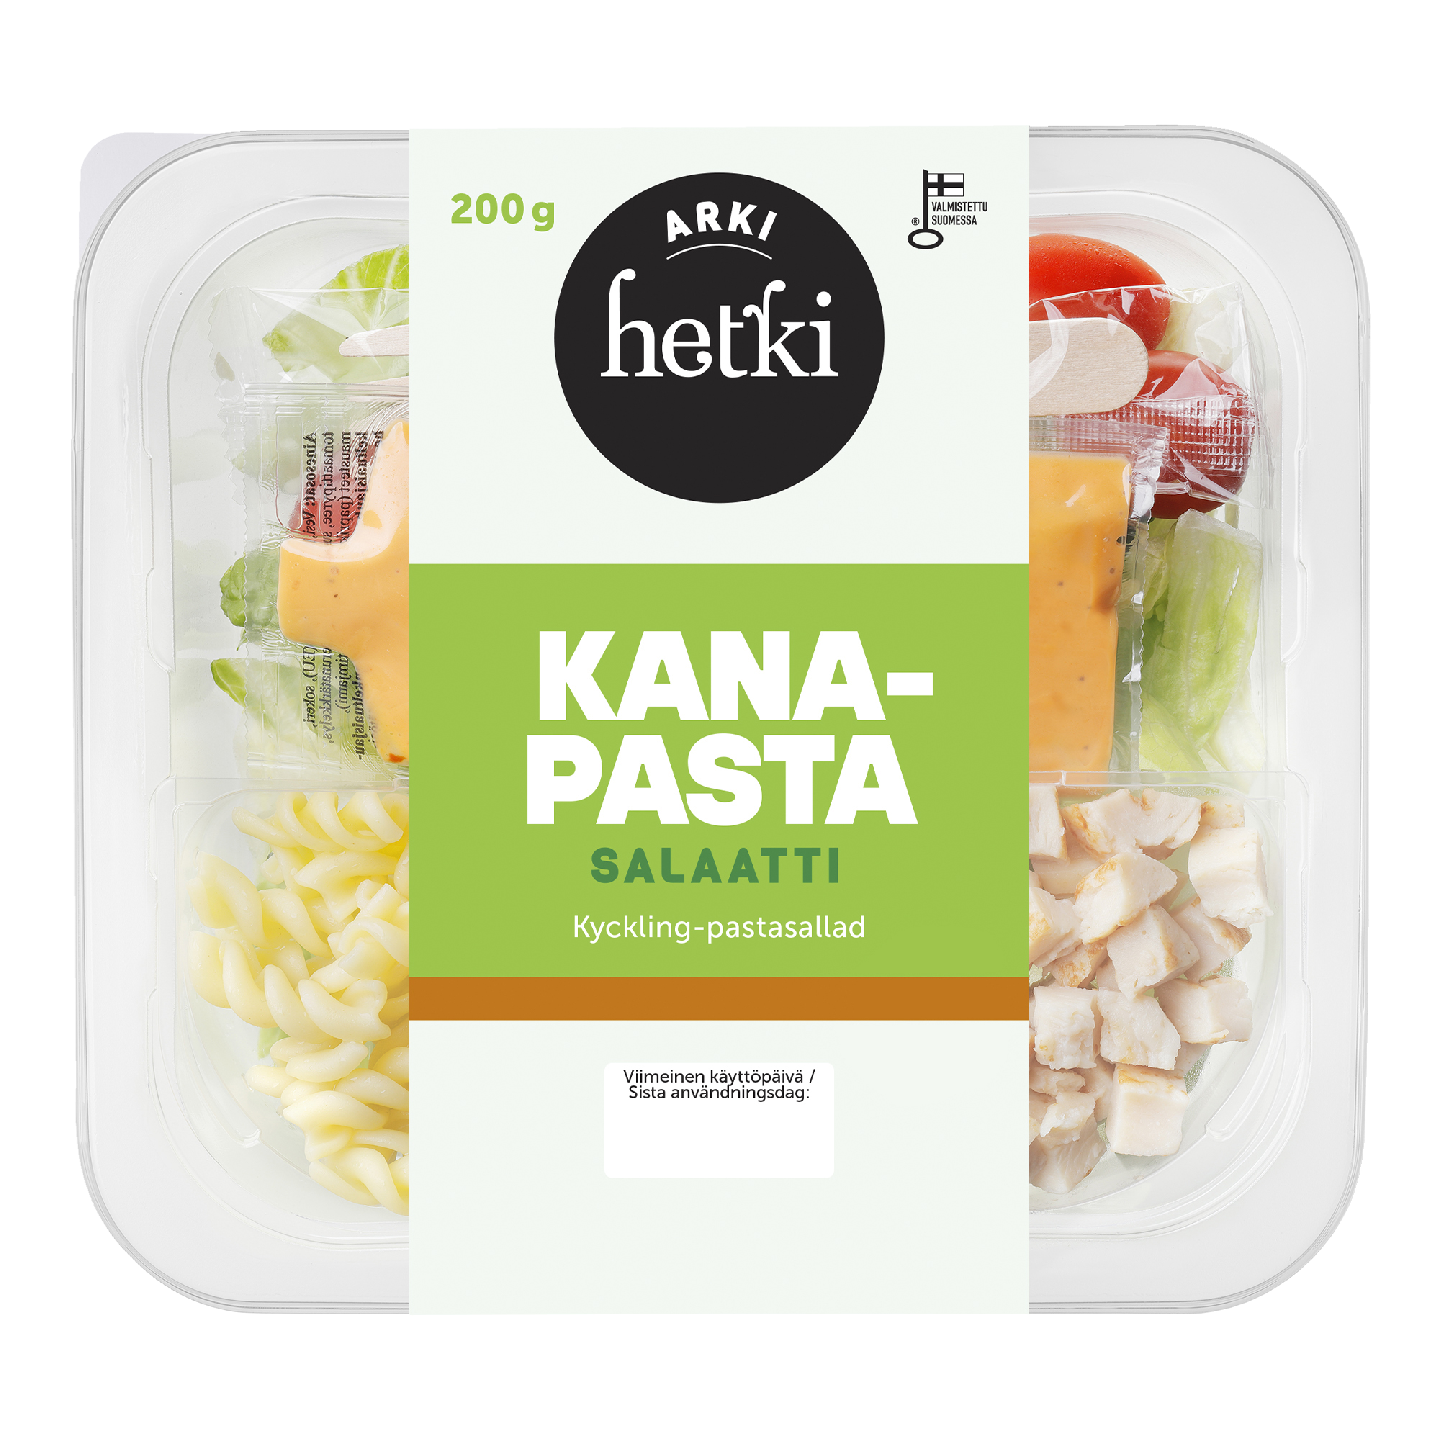 Fresh Hetki Arki kana-pastasalaatti 200g